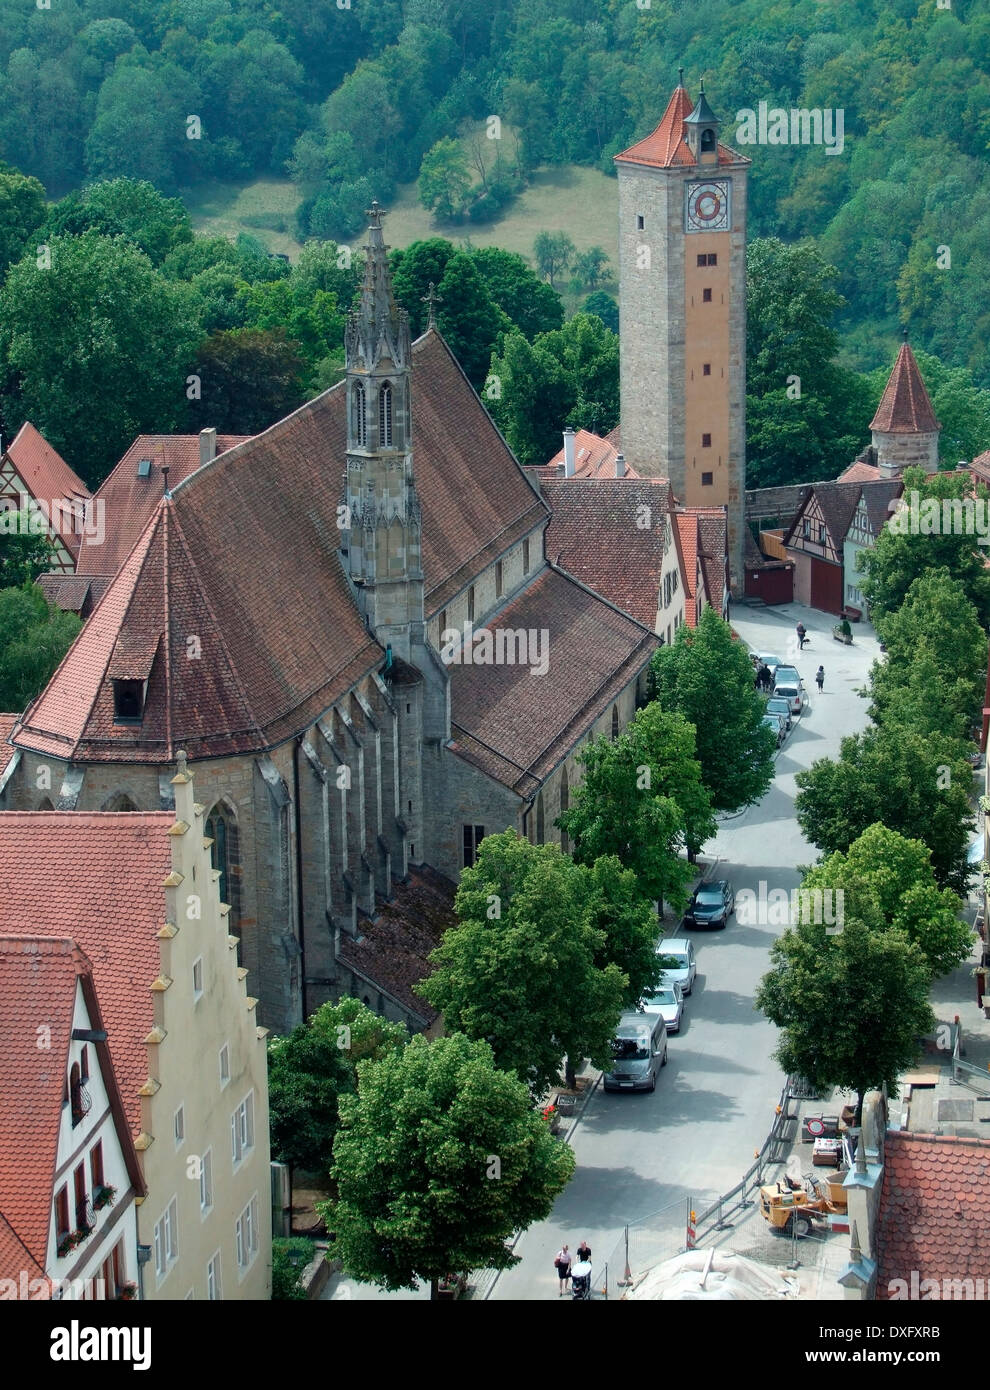 Luftaufnahme von Rothenburg Ob der Tauber, einer Stadt in Mittelfranken in Bayern (Deutschland) Stockfoto